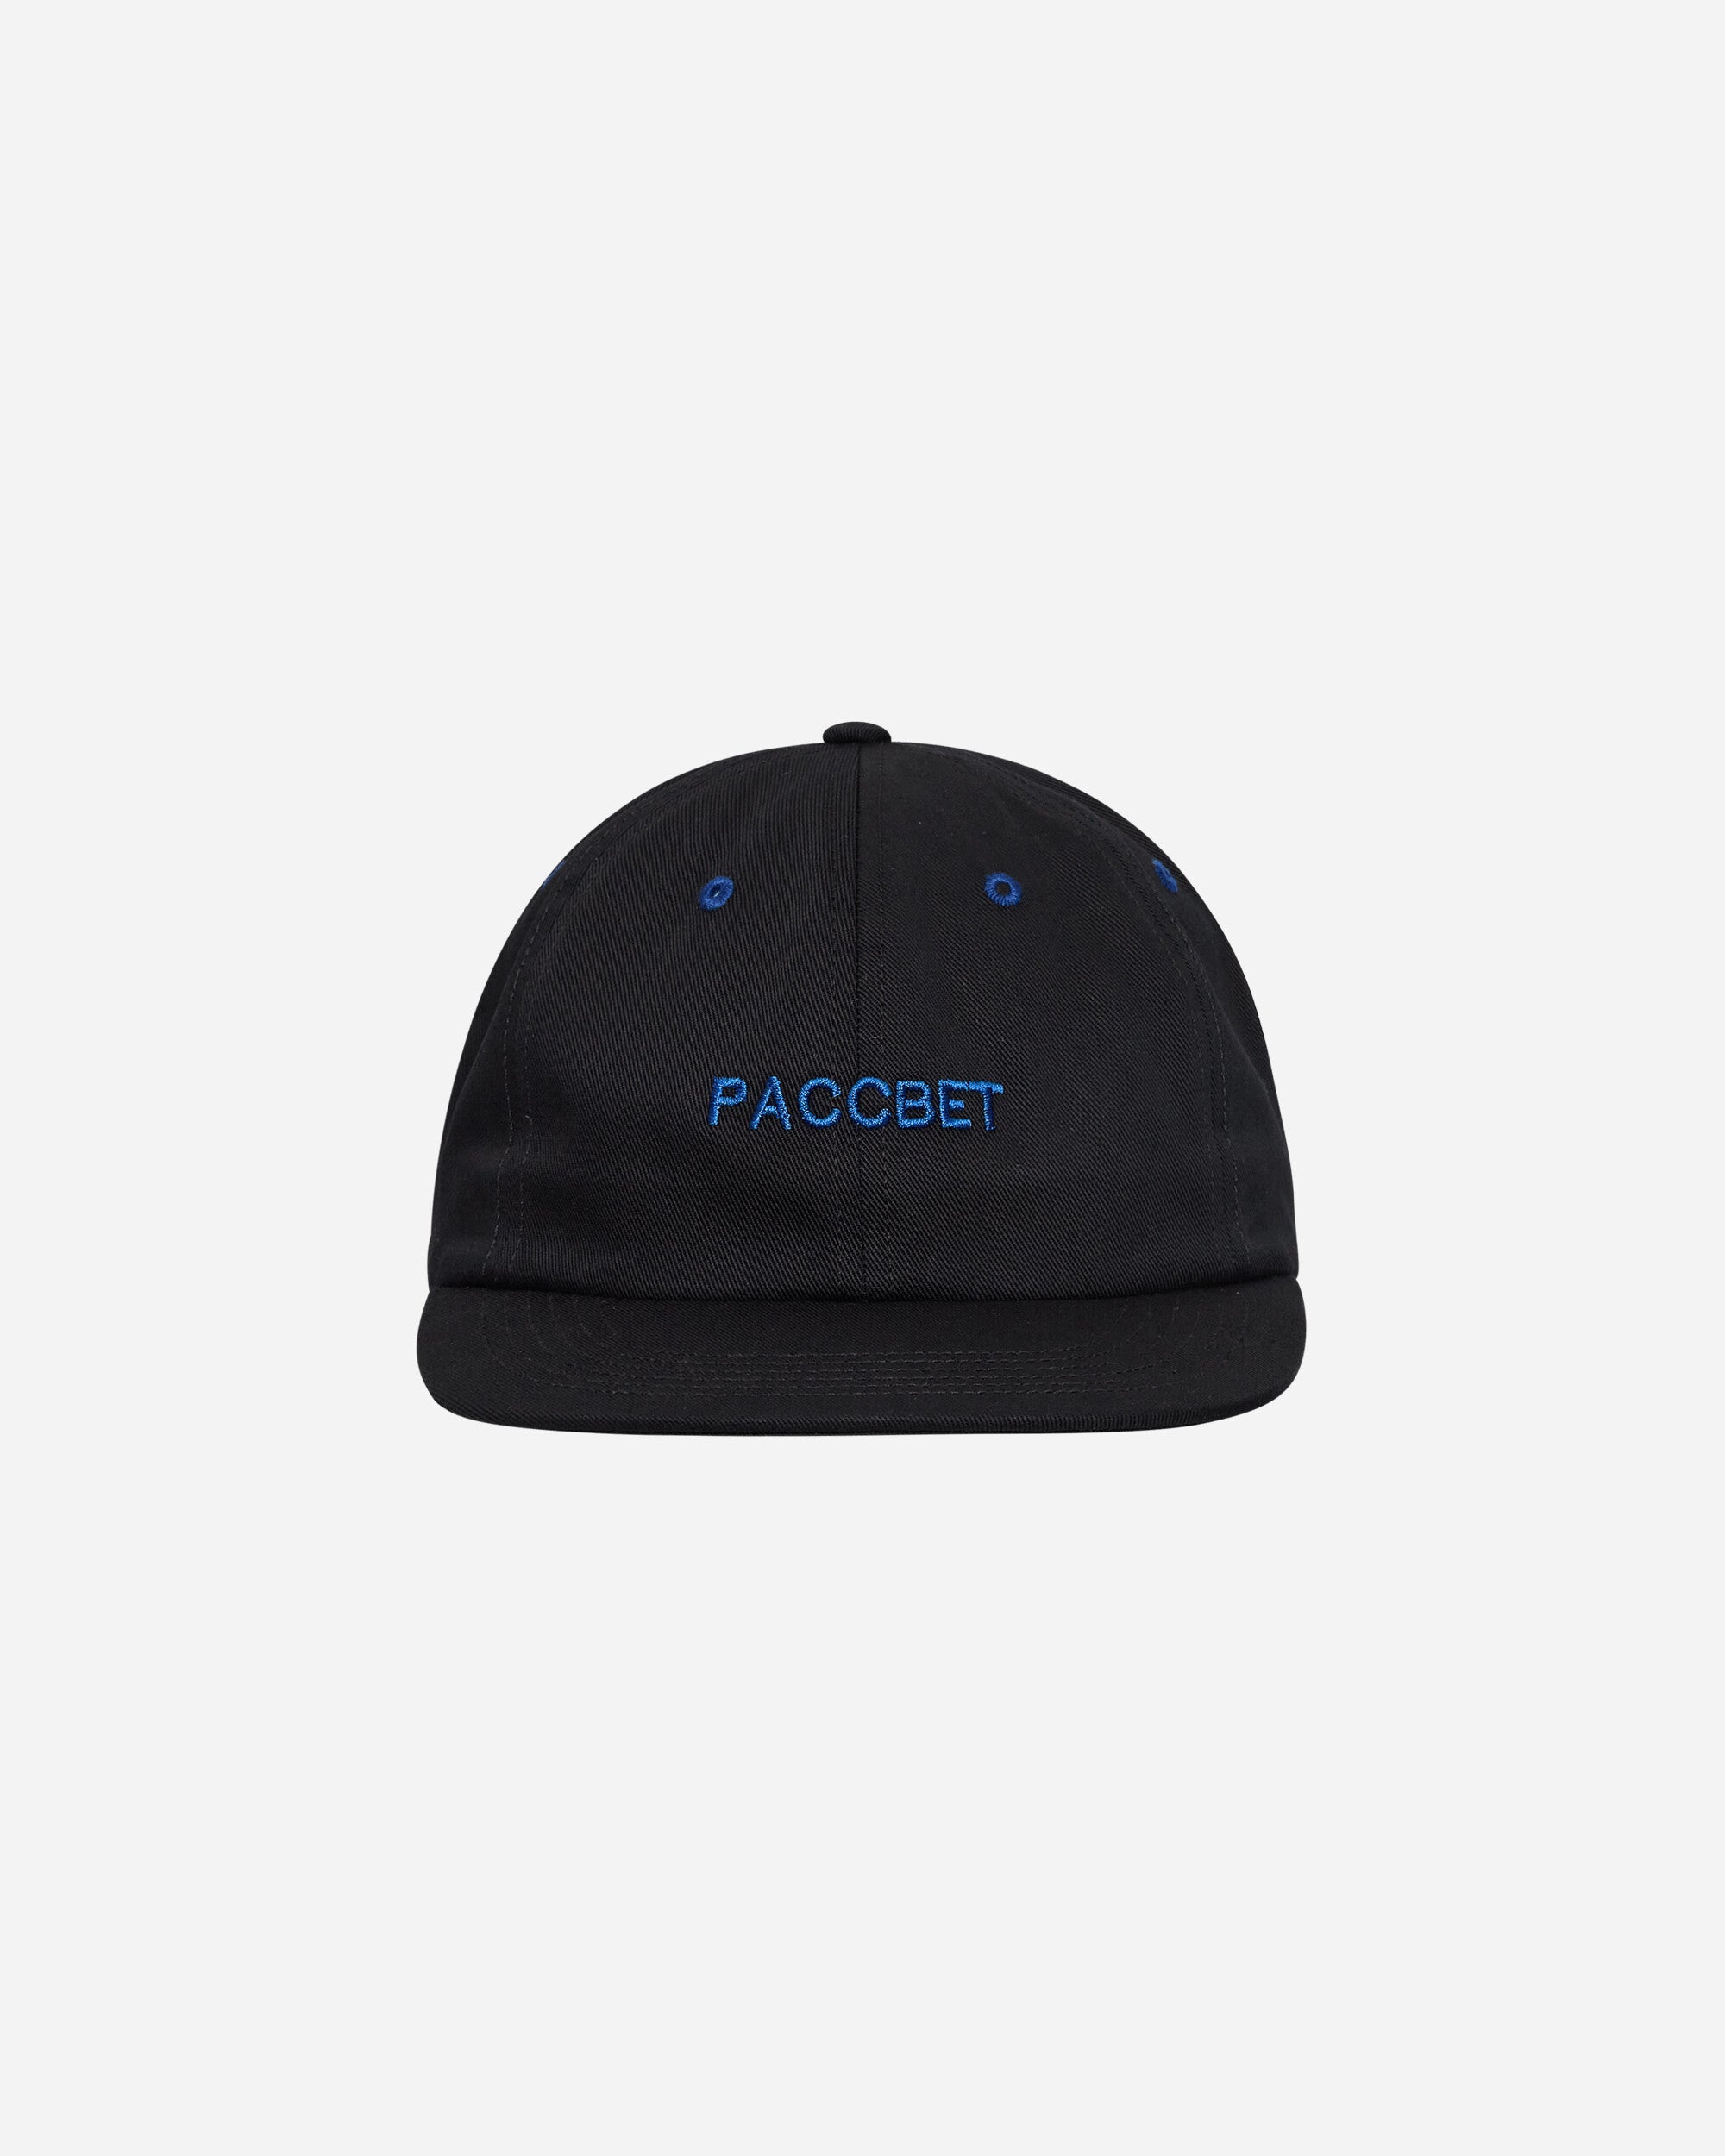 Paccbet Men 6-Panel Paccbet Cap Woven Black Hats Caps PACC12K007 1